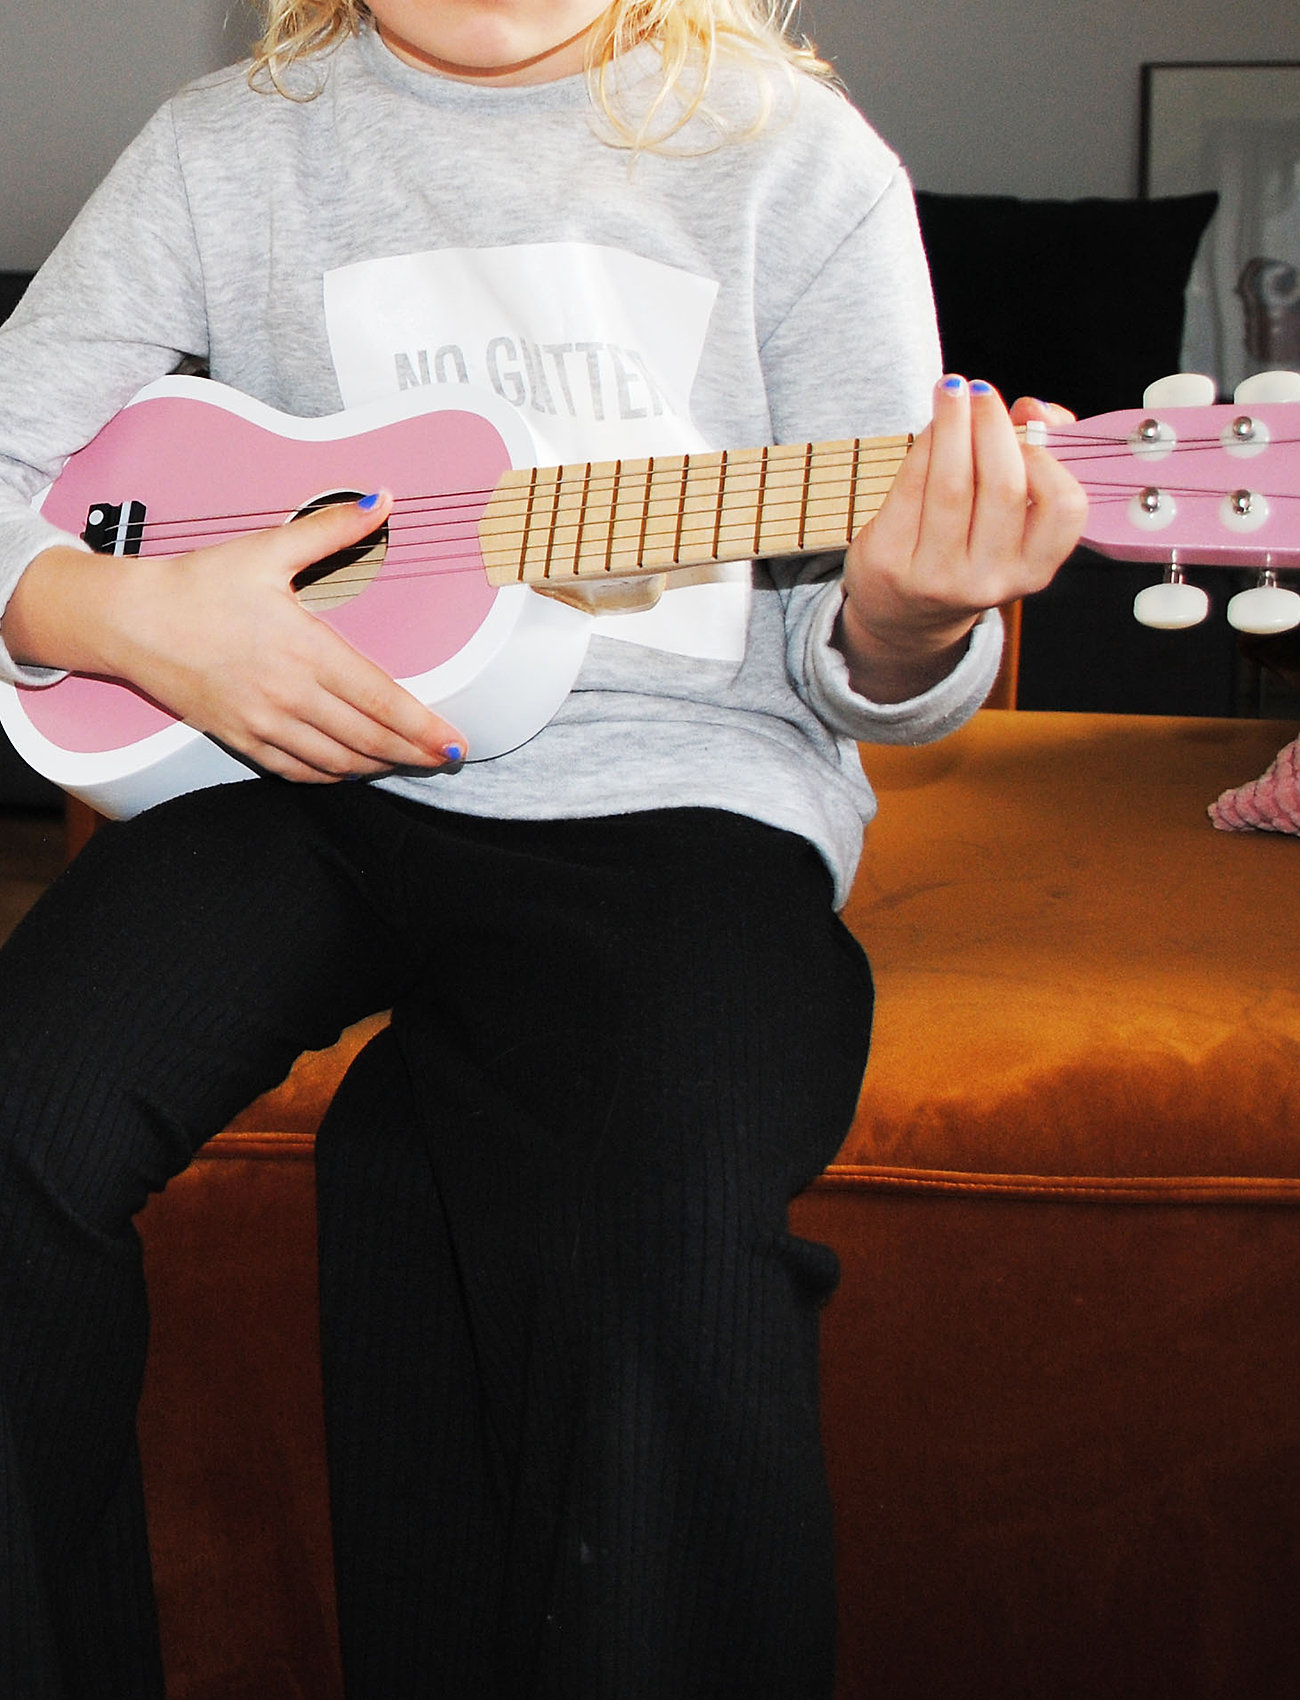 Magni Toys - Pink / white guitar - laveste priser - pink - 1